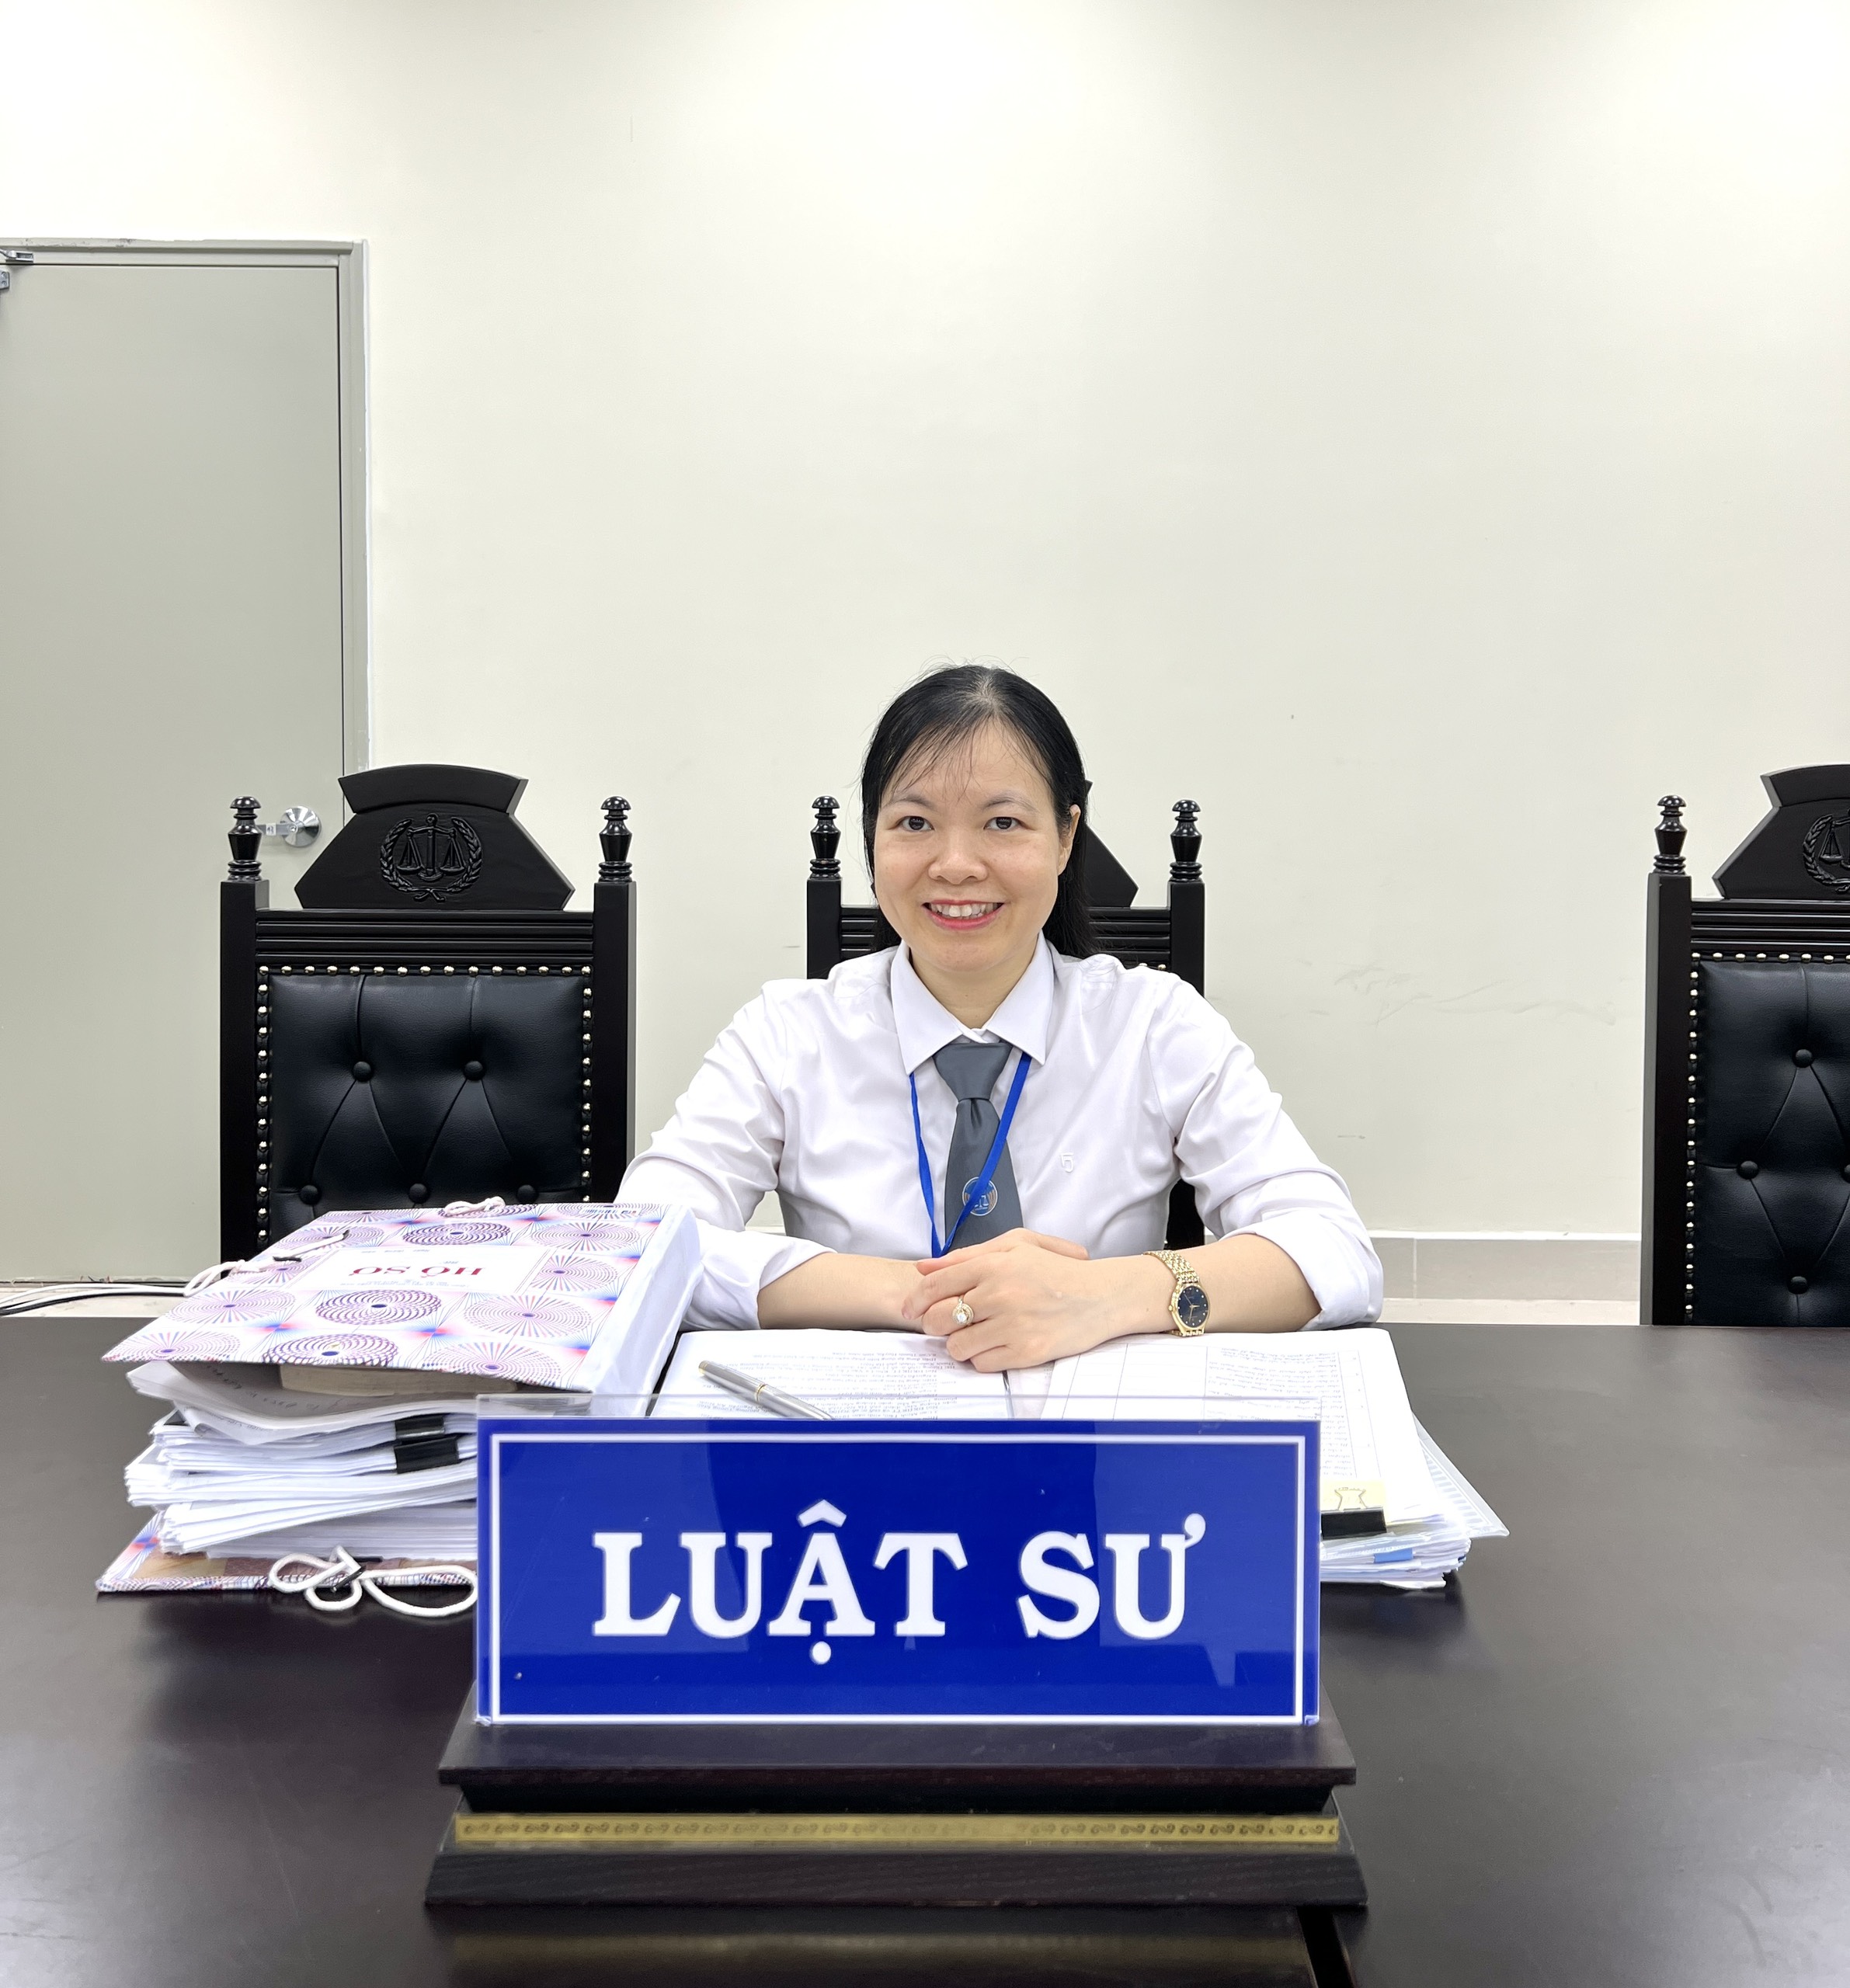 Luật sư Phạm Thị Bích Hảo bào chữa cho bị cáo trong vụ án tham ô tài sản